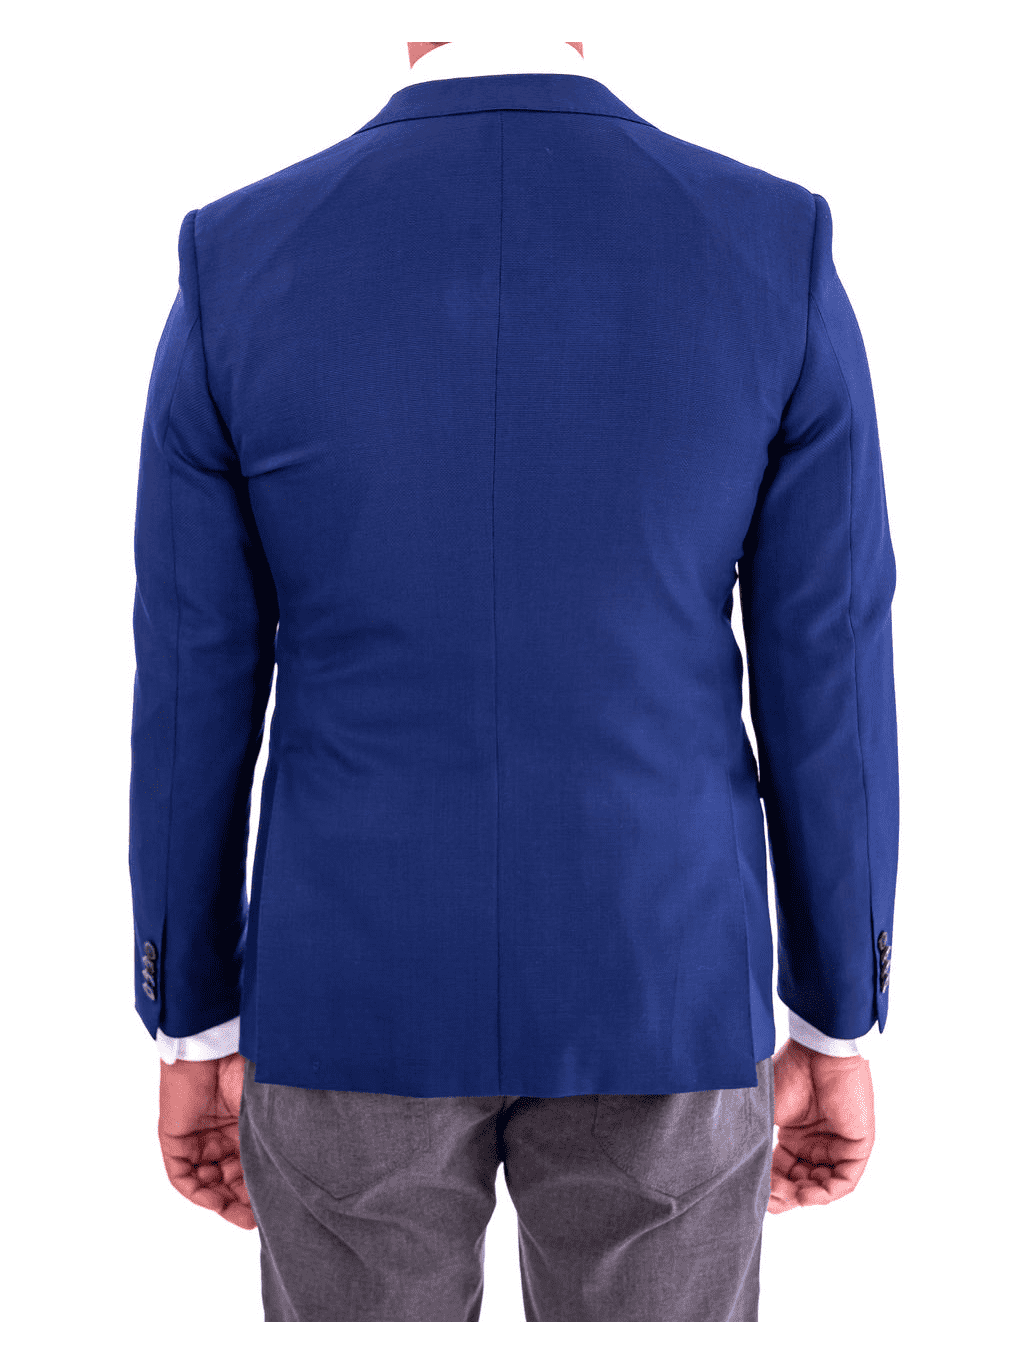 https://thesuitdepot.com/cdn/shop/files/blujacket-blazers-blujacket-mens-blue-textured-100-wool-2-button-regular-fit-blazer-sportcoat-33549656031414_1200x.png?v=1692798155